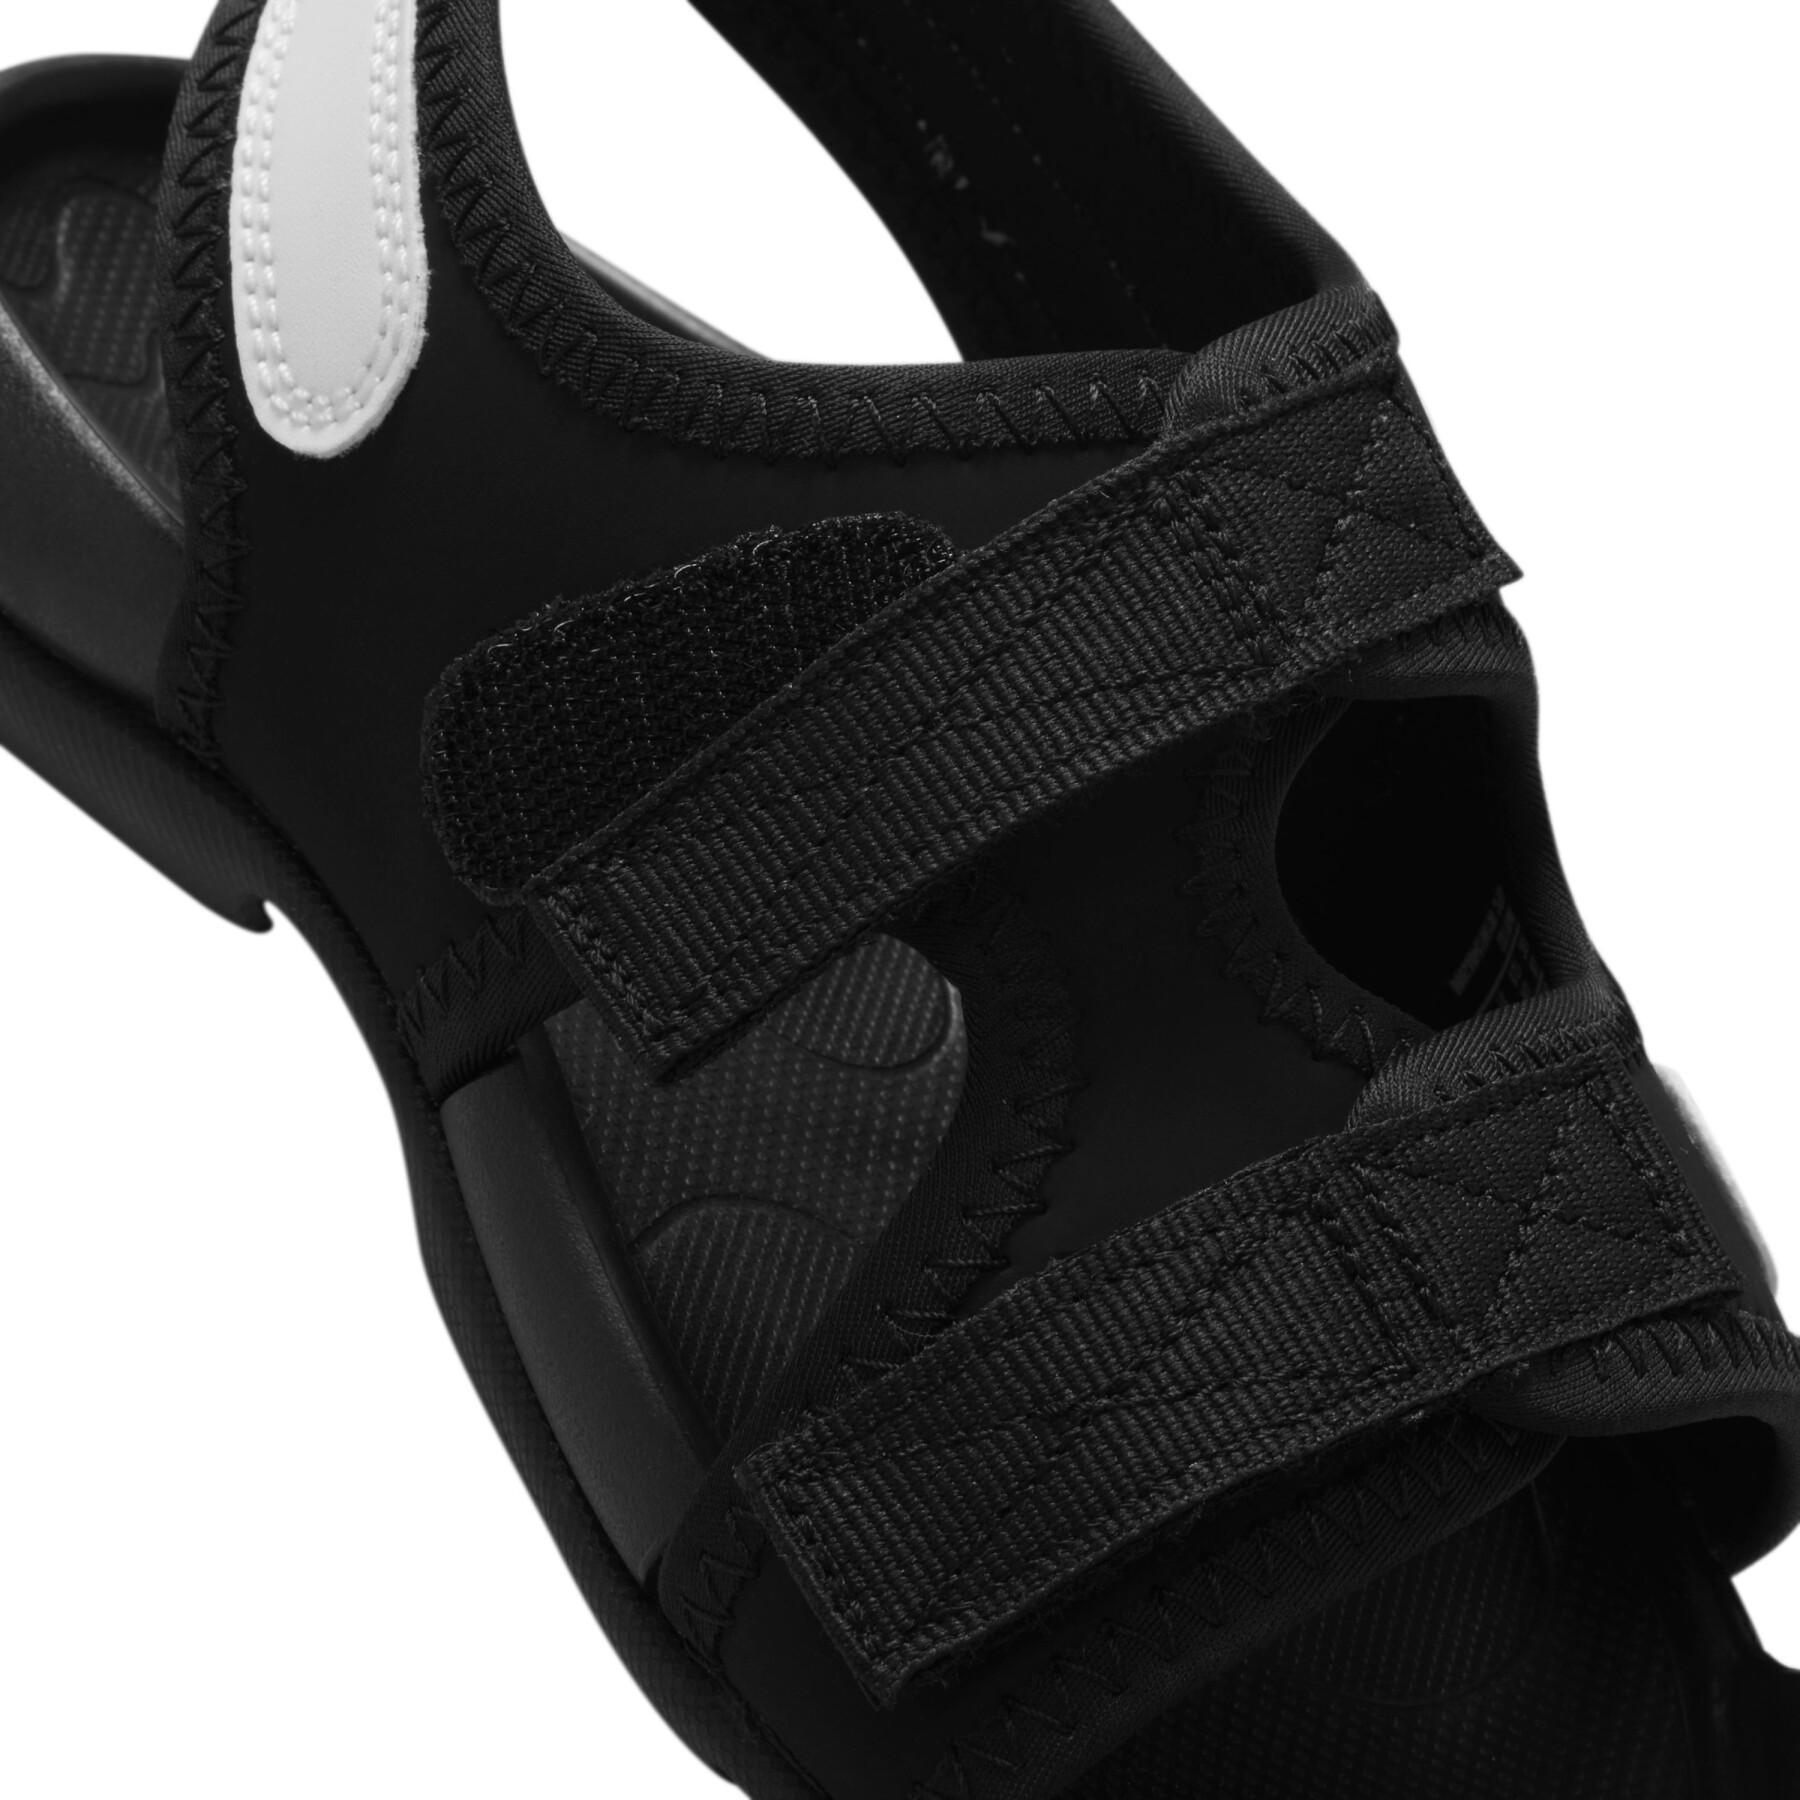 Sandalias rascadas para niños Nike Sunray Adjust 6